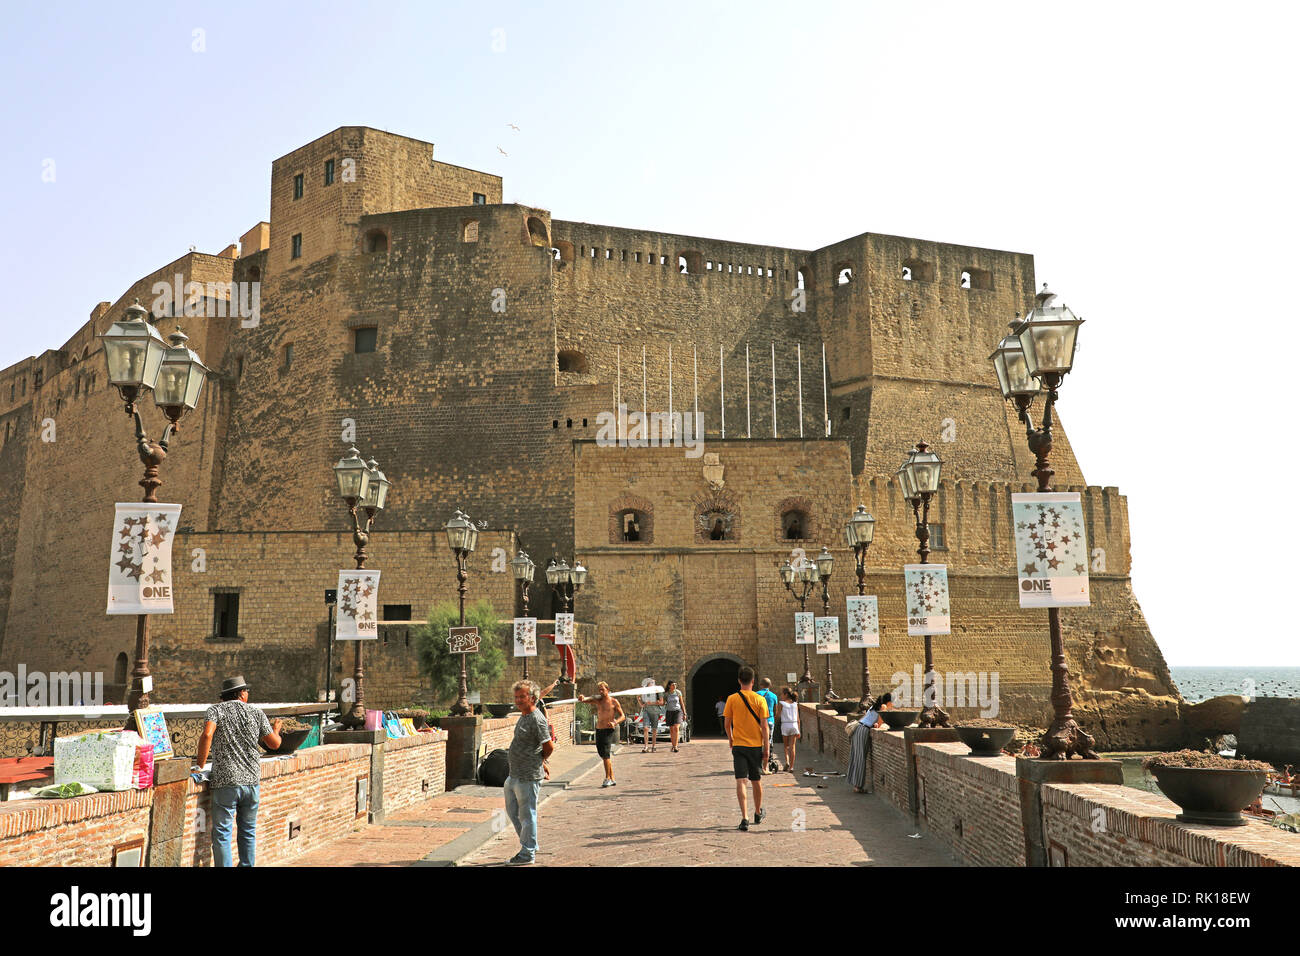 Neapel, Italien - Juli 5, 2018: Touristen zu Fuß zu Ei Burg (Castel dell'Ovo) eine mittelalterliche Festung in Neapel, Italien Stockfoto